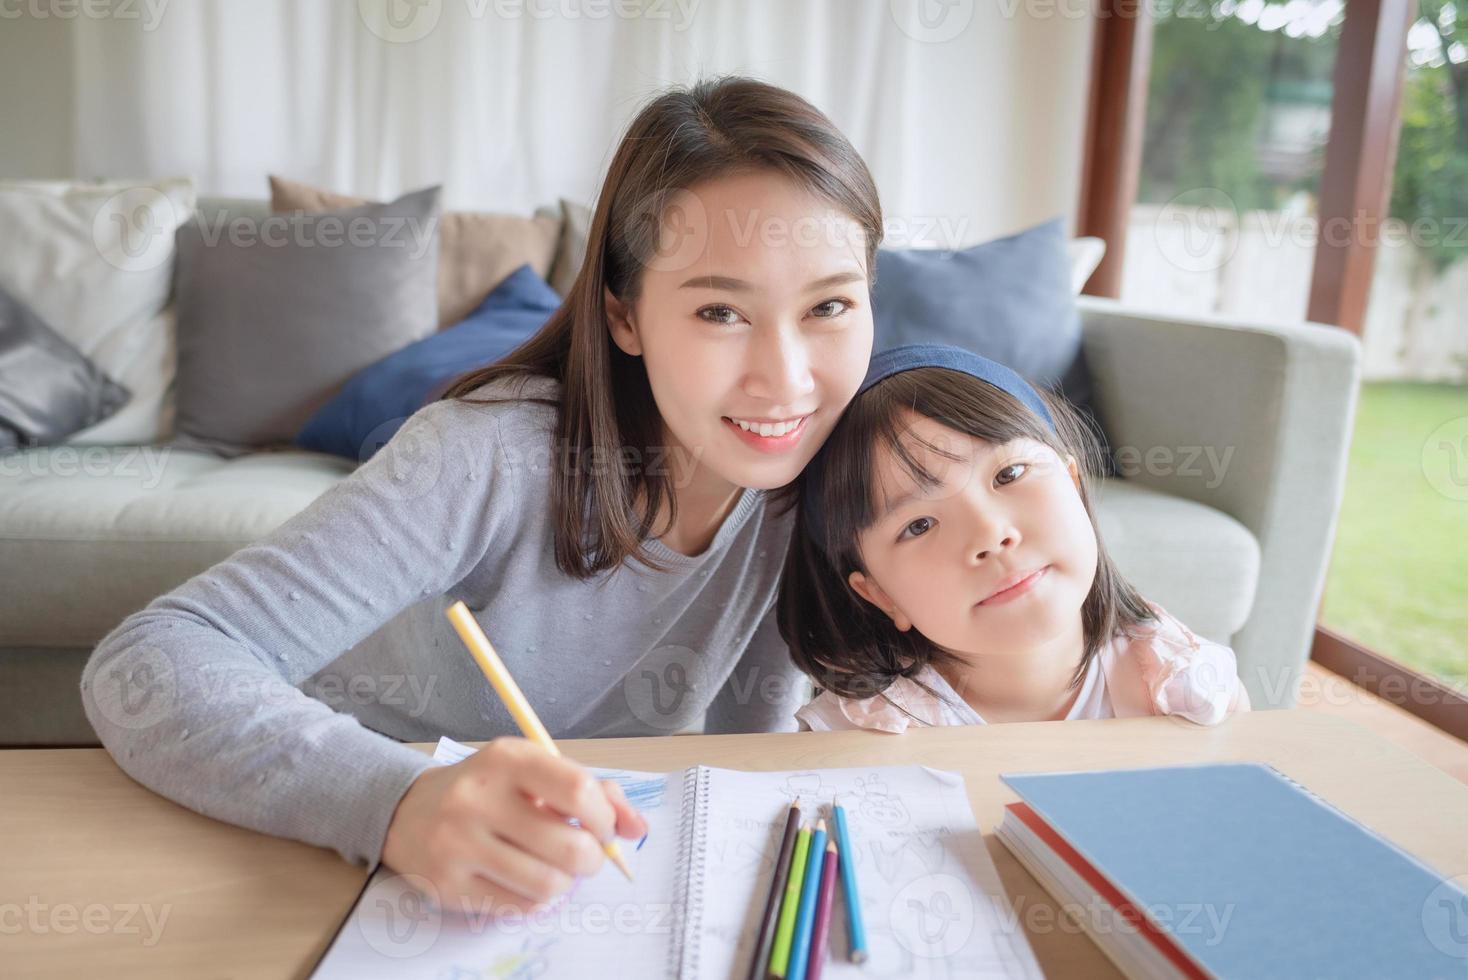 glückliche asiatische Mutter, die ihrer süßen Tochter das Studium der Vorschule im Wohnzimmer zu Hause beibringt foto